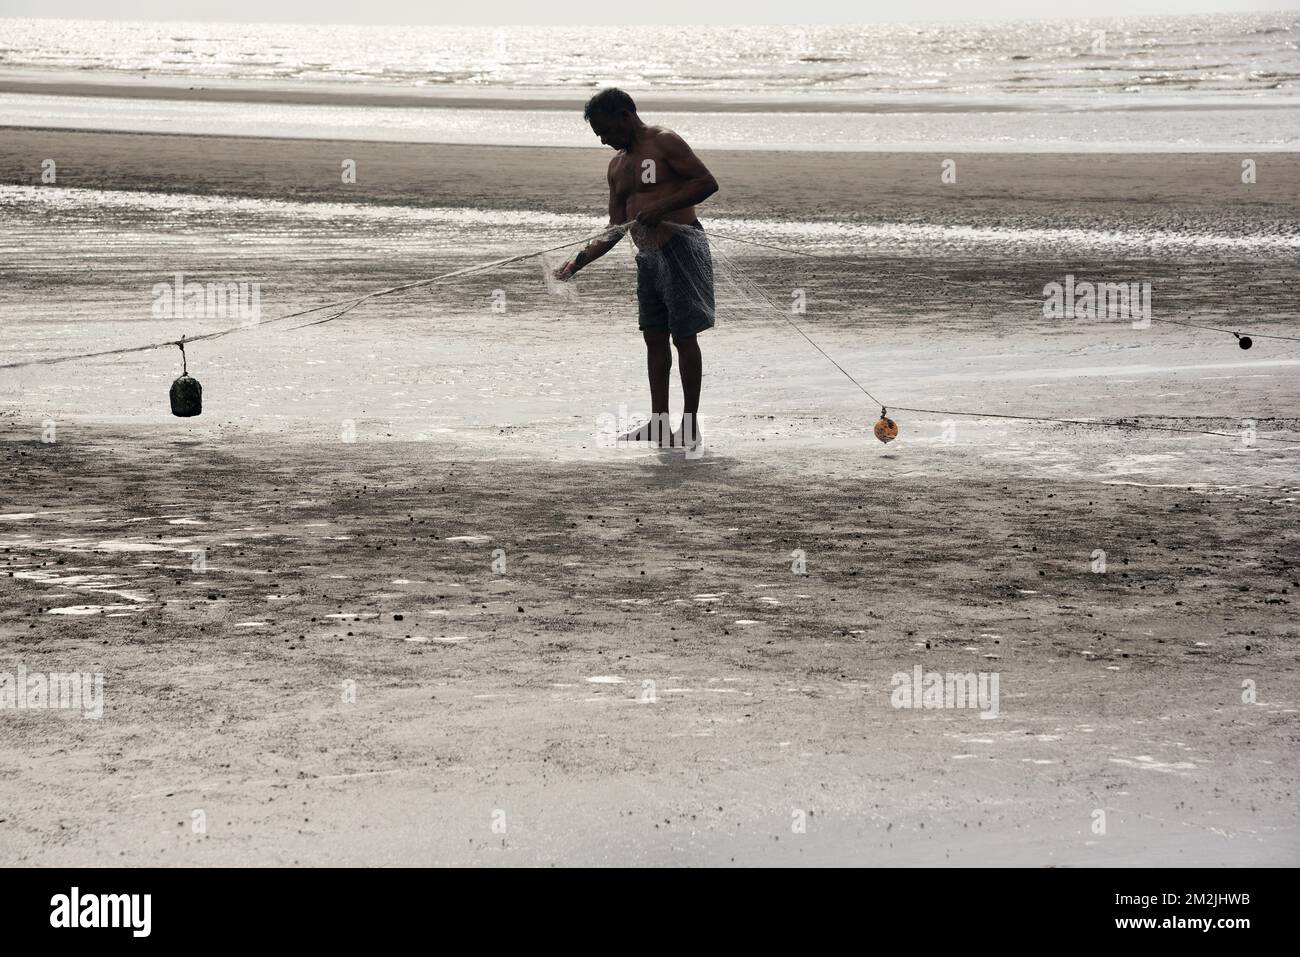 Fisherman repairing fishing net, Bhagal beach, Valsad, Gujarat, India, Asia Stock Photo